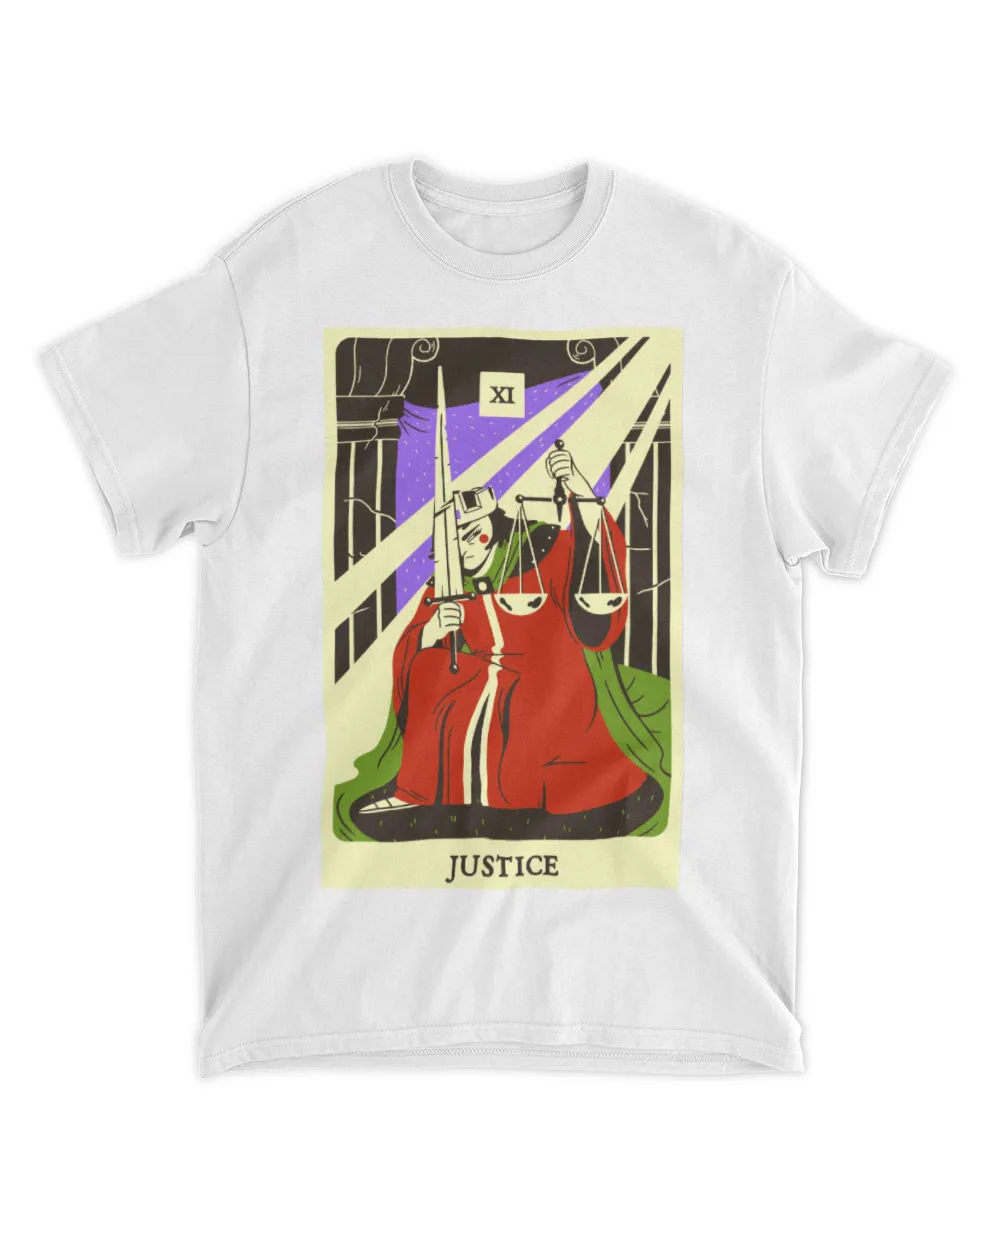 Tarot card justice shirt